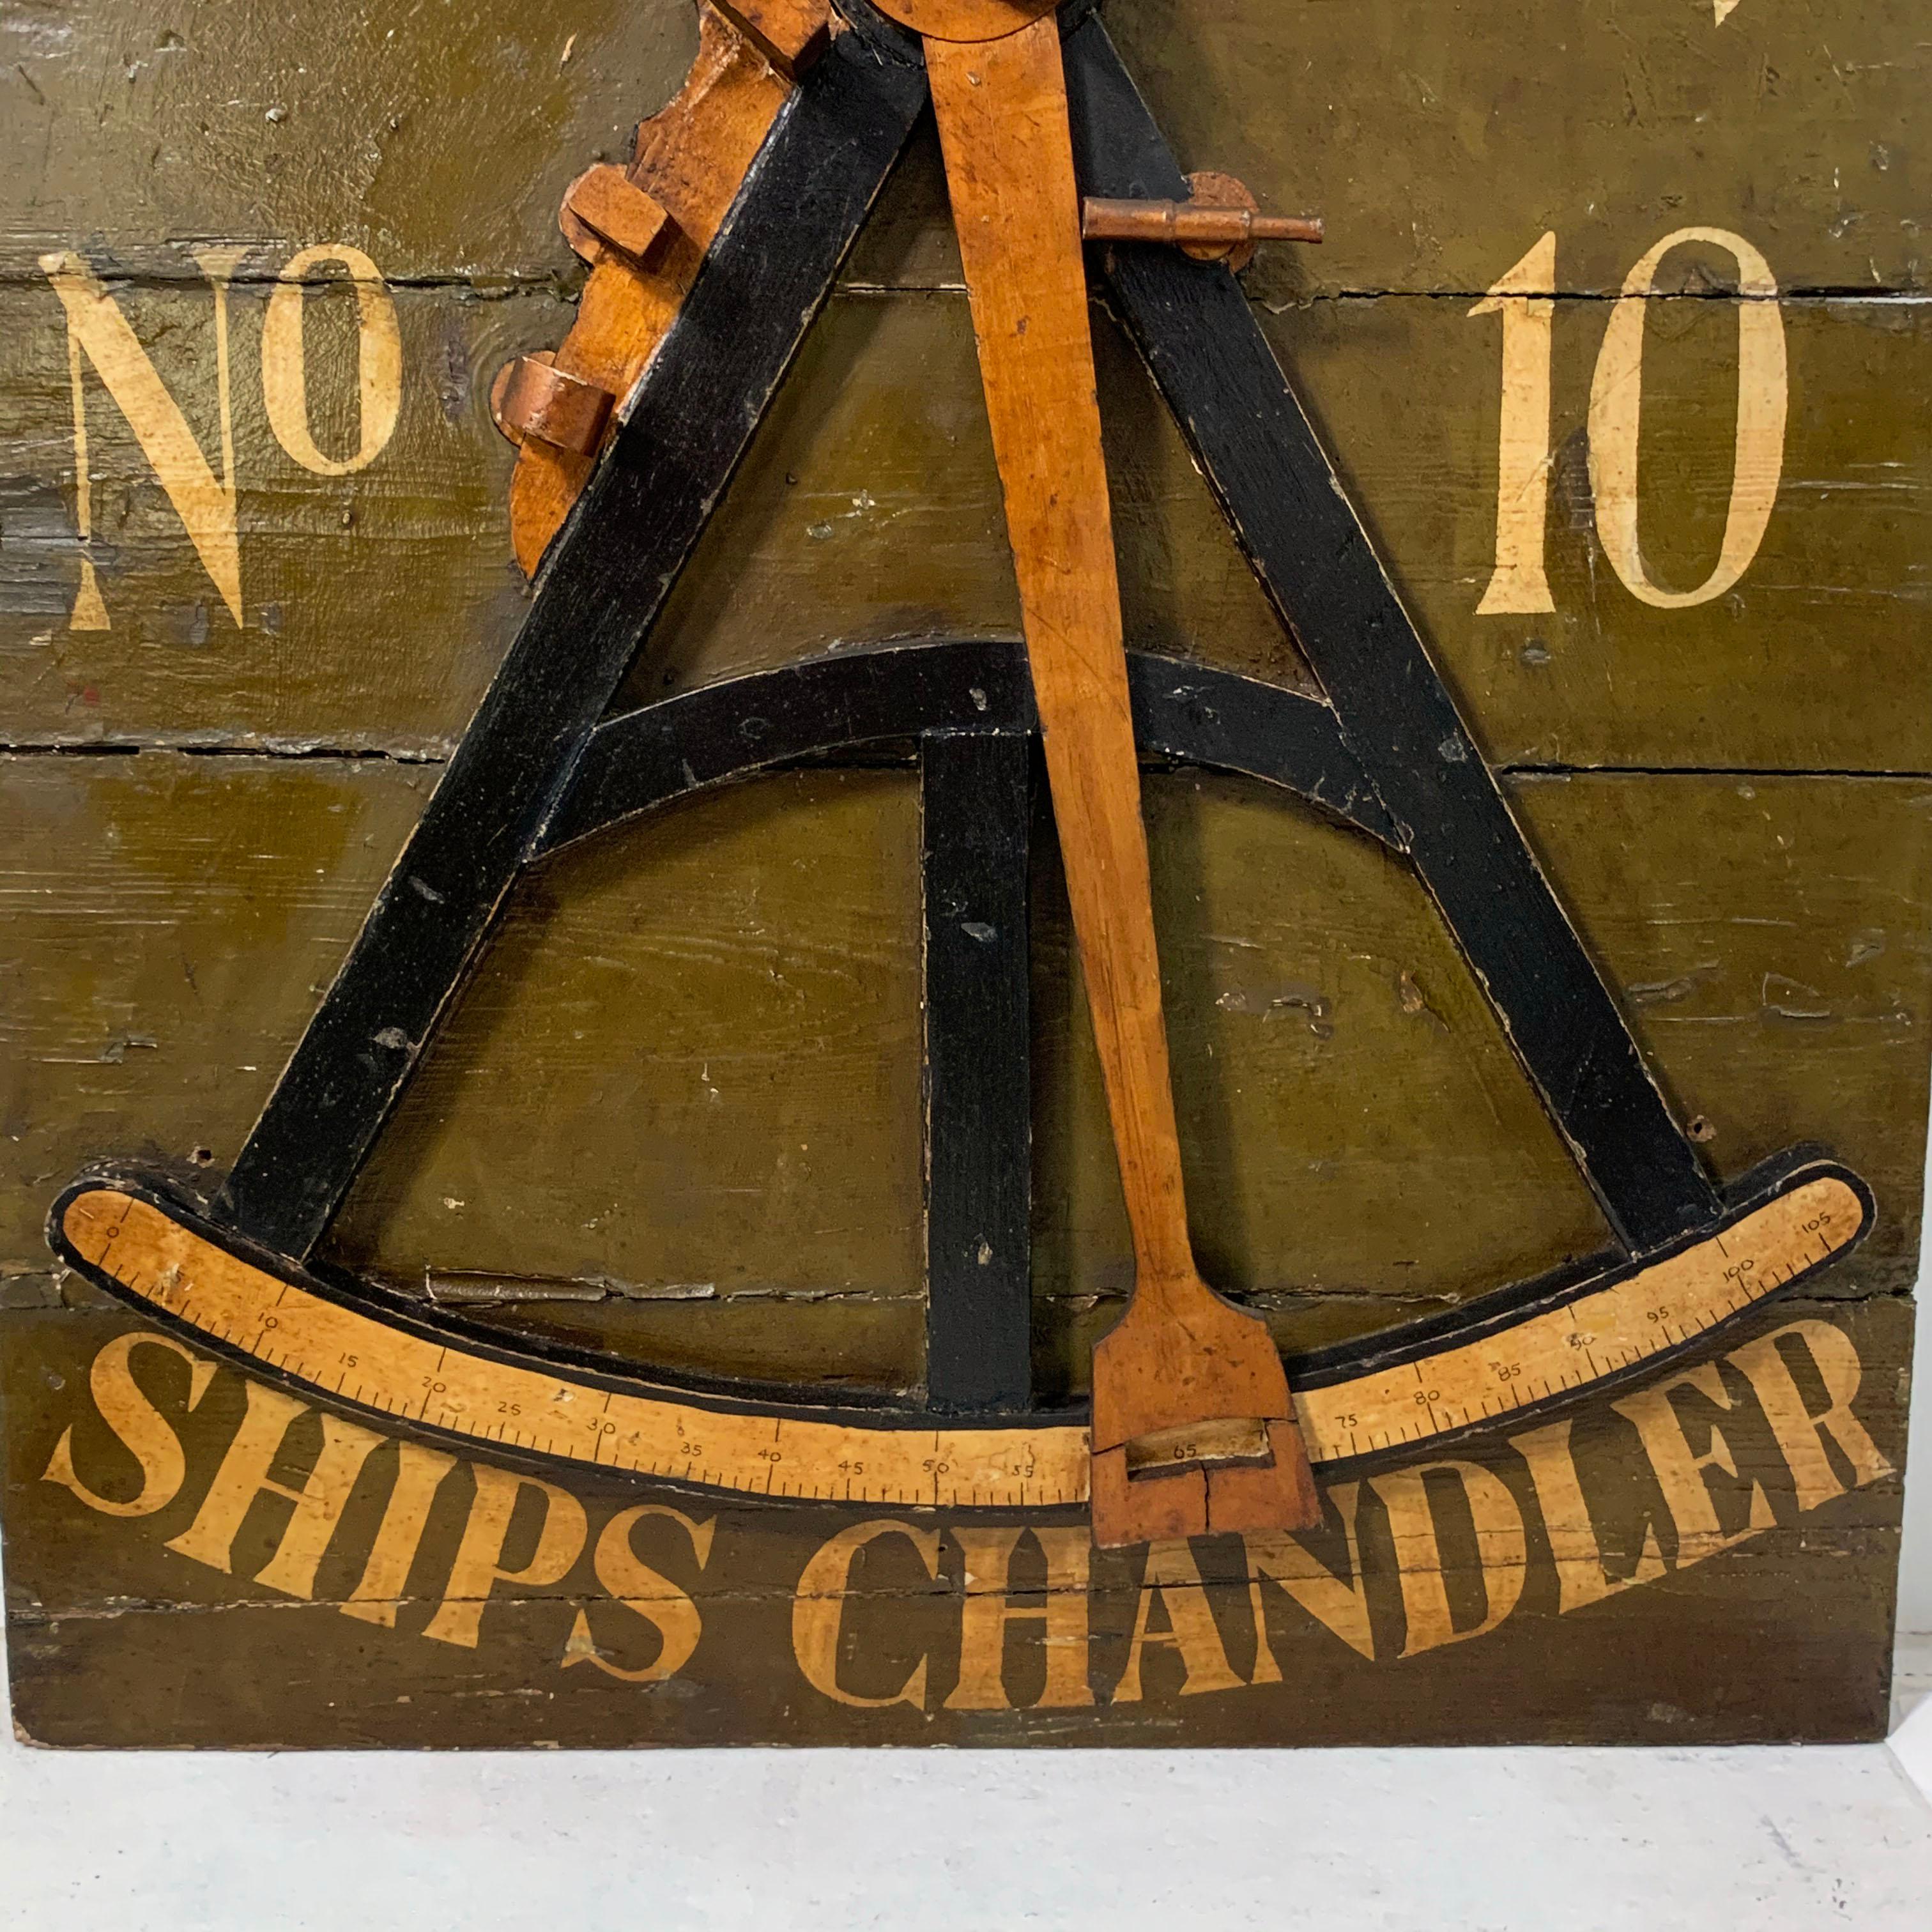 Une relique de l'histoire mercantile de Boston et du commerce maritime. Cette enseigne de magasin du XIXe siècle présente une réplique assez détaillée d'un octant (ou sextant) de navigateur, ainsi que le nom du propriétaire et le numéro de la rue.